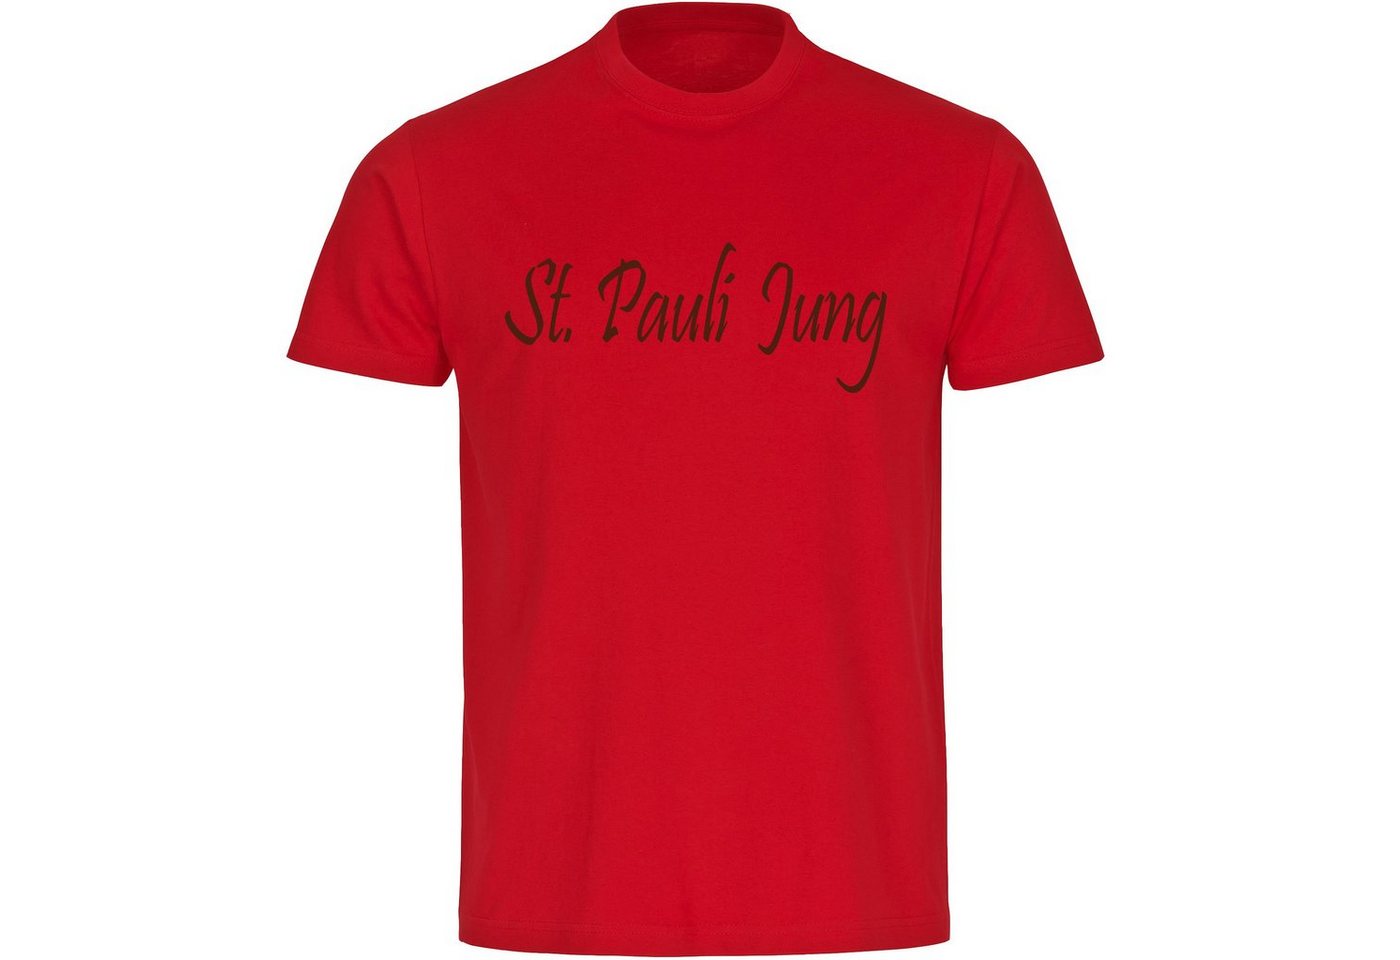 multifanshop T-Shirt Herren St. Pauli - St. Pauli Jung - Männer von multifanshop